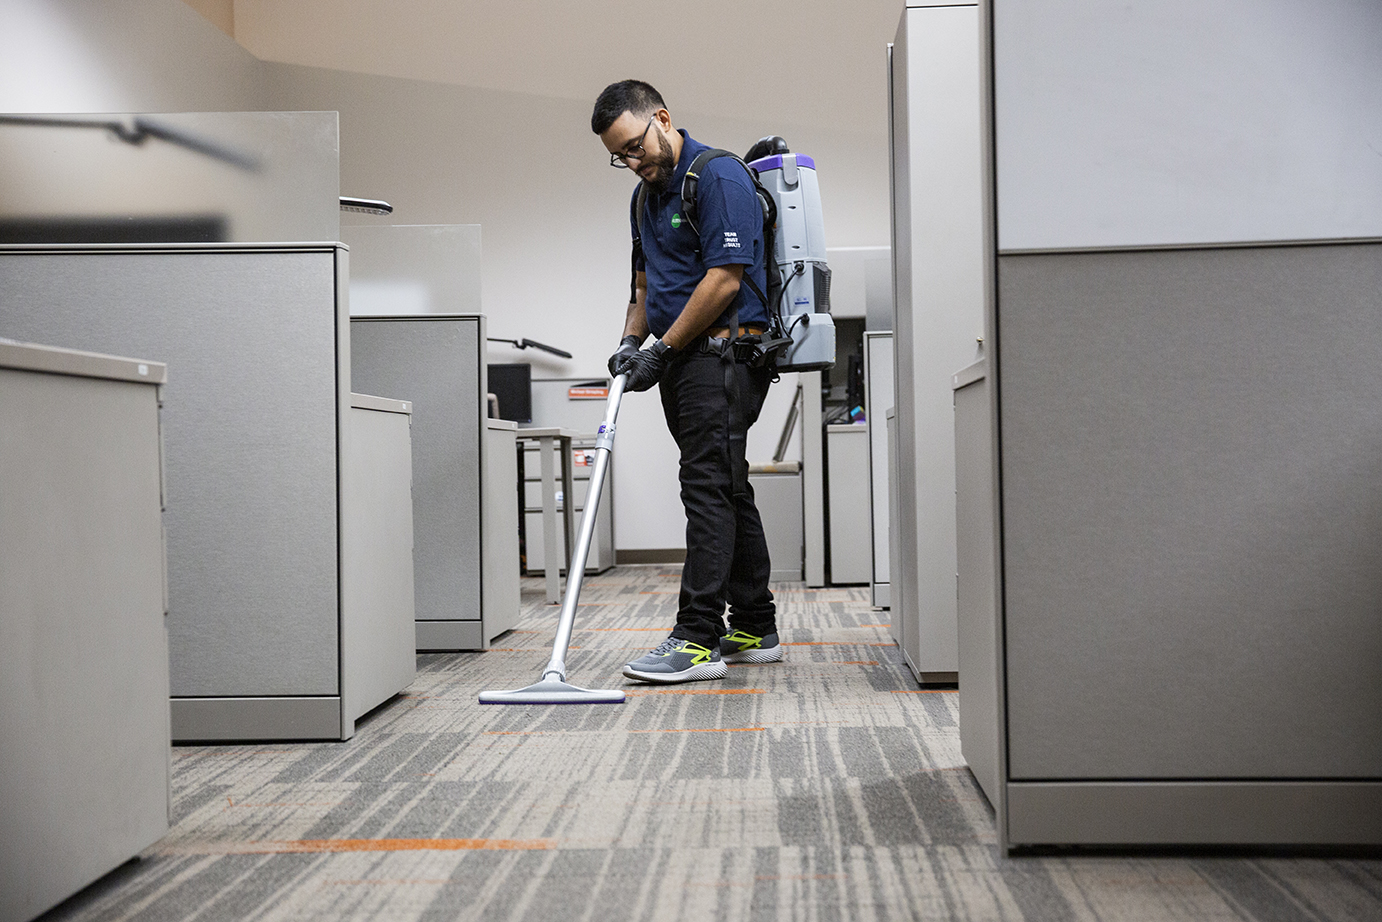 Busque empresas de servicios de limpieza en Milwaukee, WI, que satisfagan sus necesidades únicas.